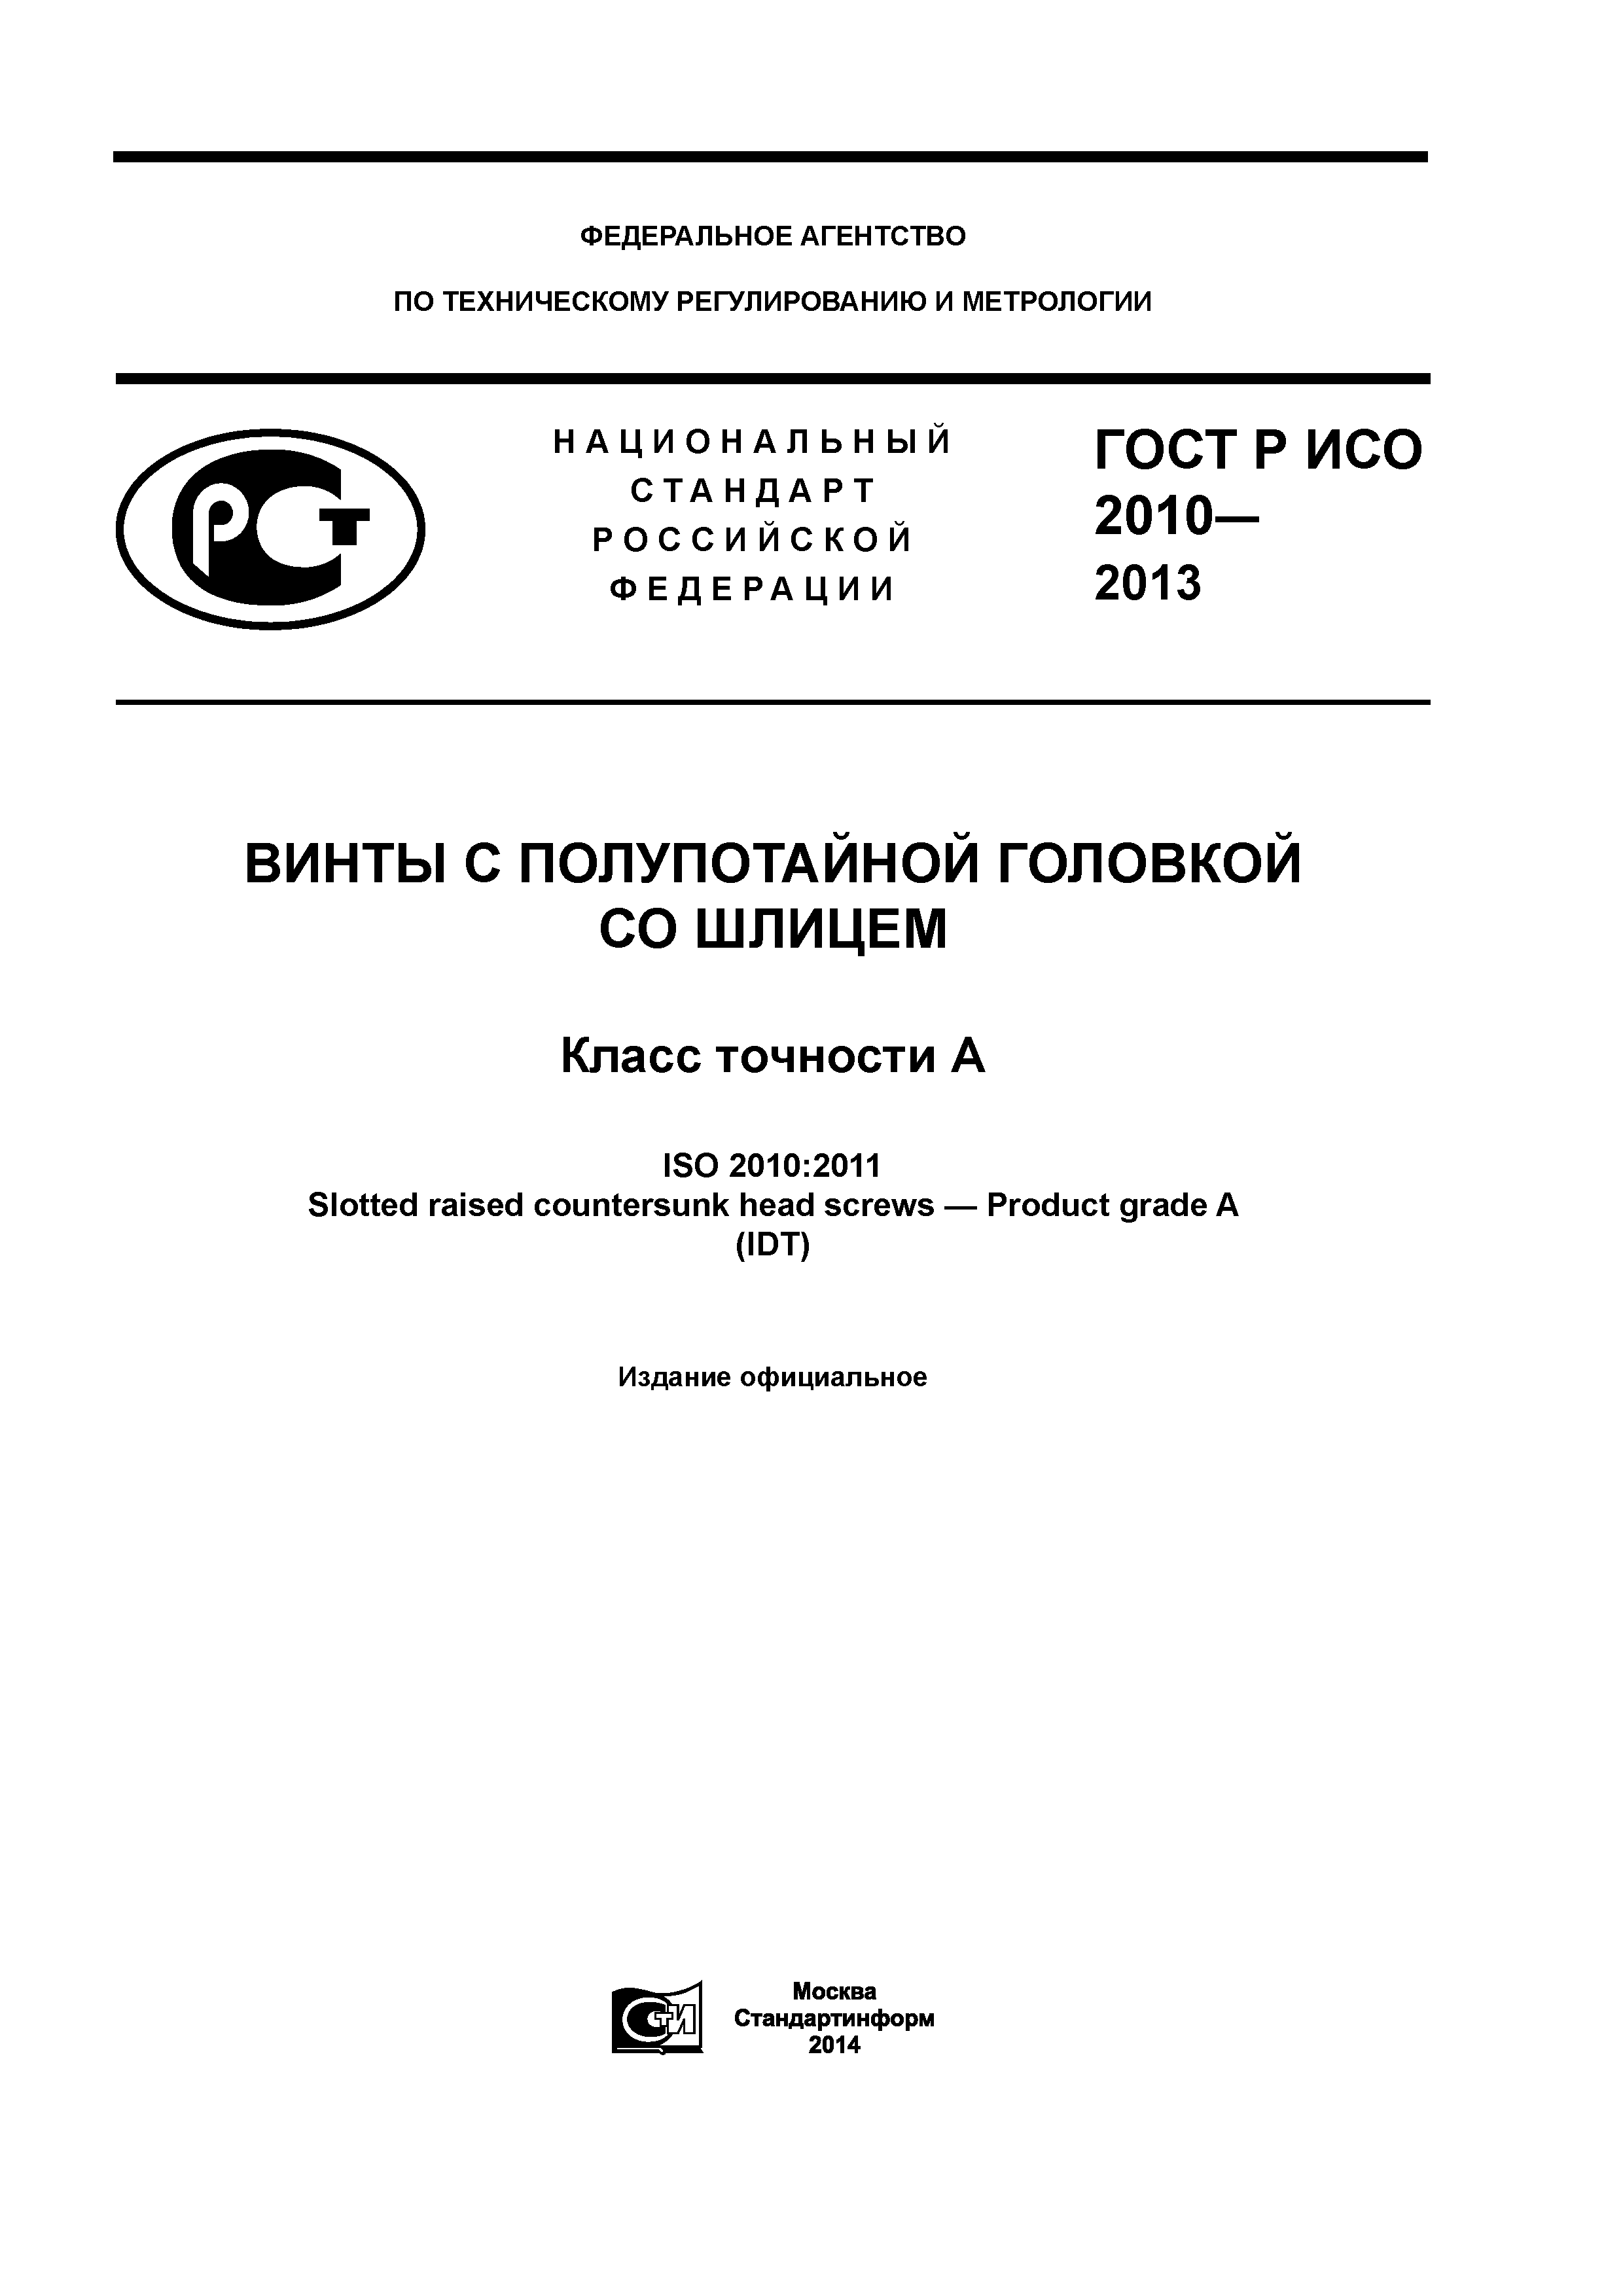 ГОСТ Р ИСО 2010-2013